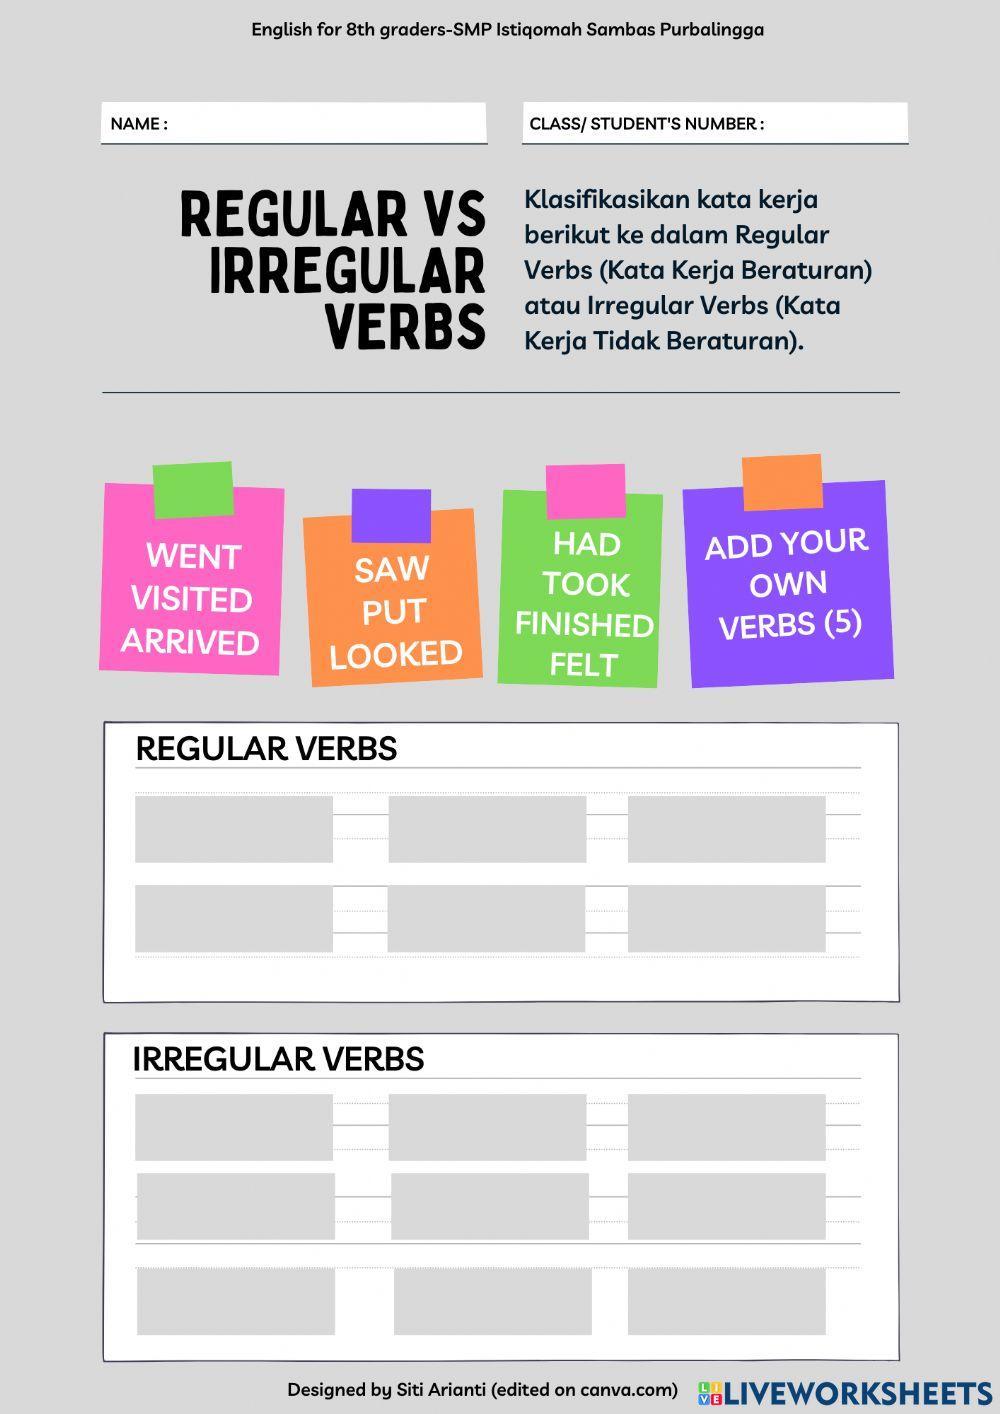 Regular vs irregular verbs